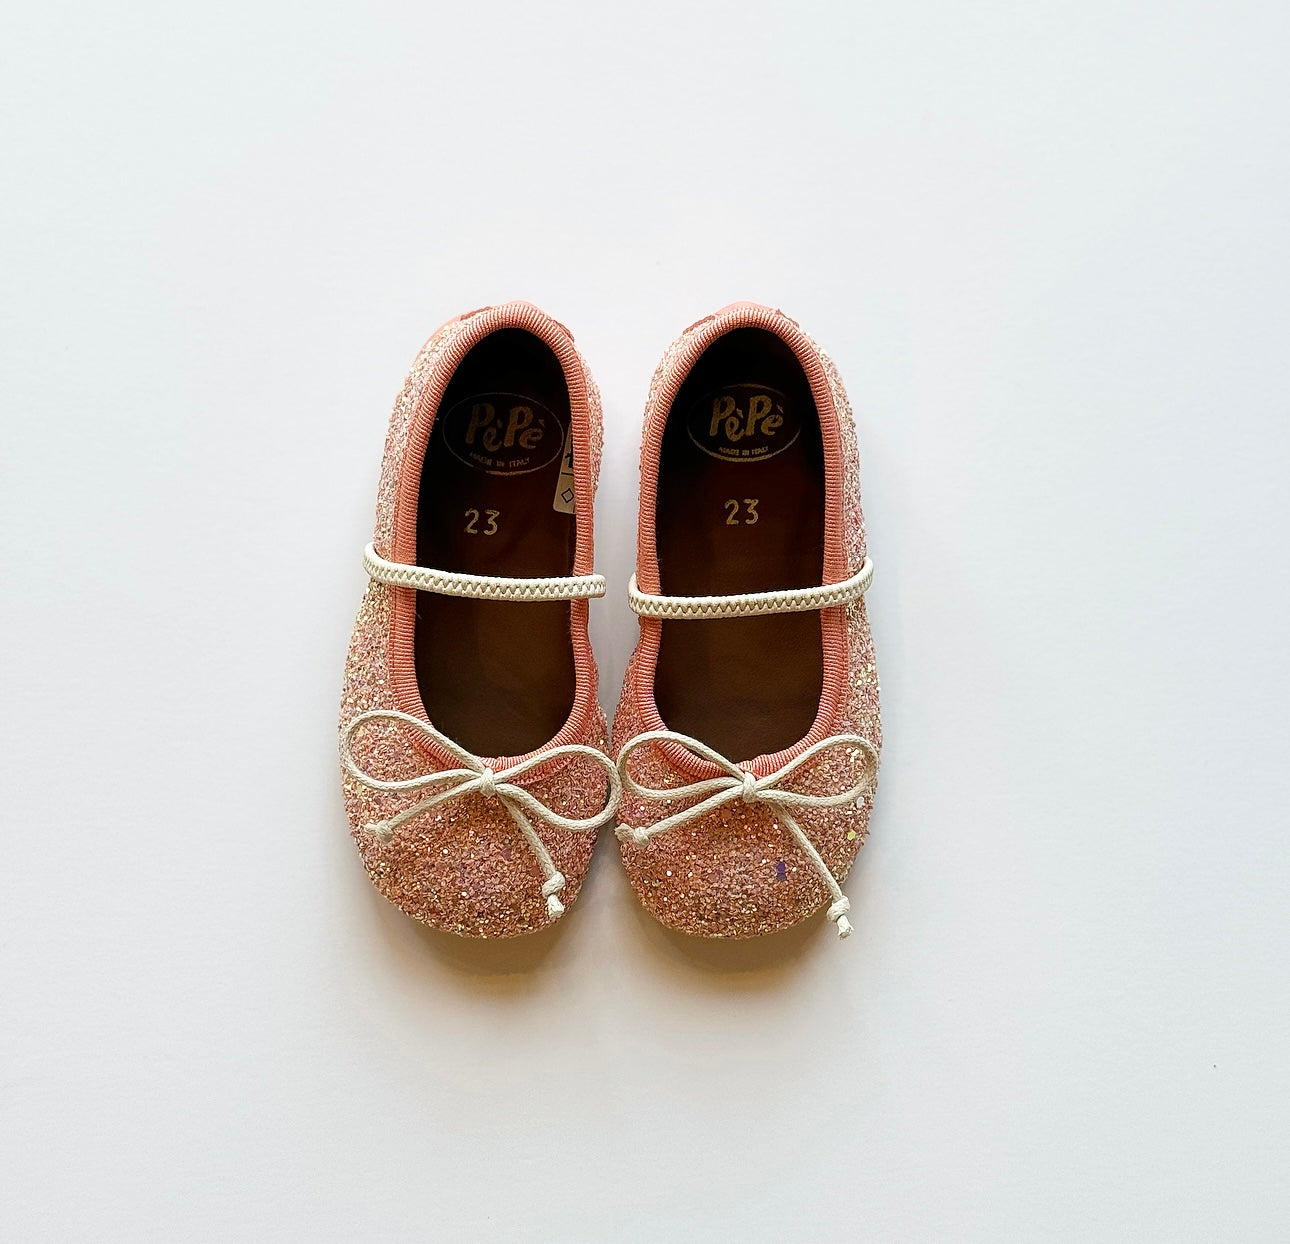 Pèpè shimmer-finish ballerina shoes - Pink